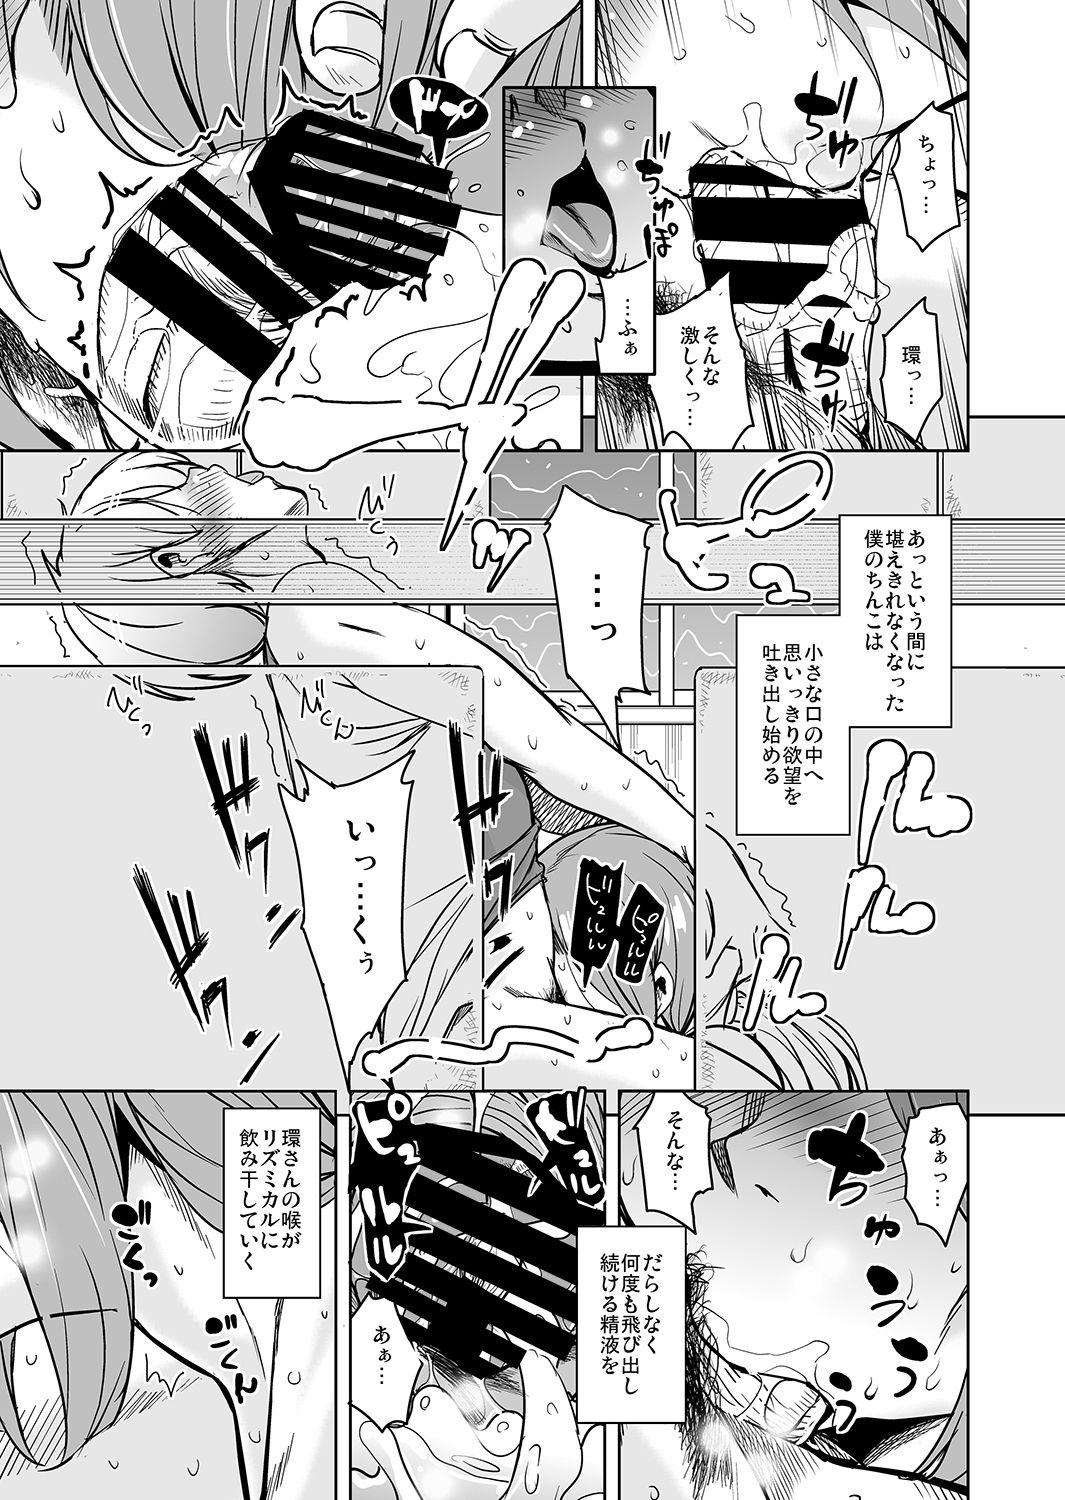 Amateur Cum Ritou e Tenkou Shitara Host Family ga Dosukebe de Komaru 6 - Original Foot - Page 11